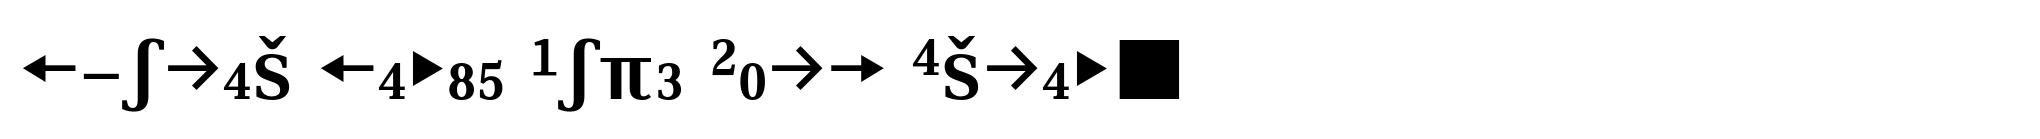 Skopex Serif Bold Caps Expert image